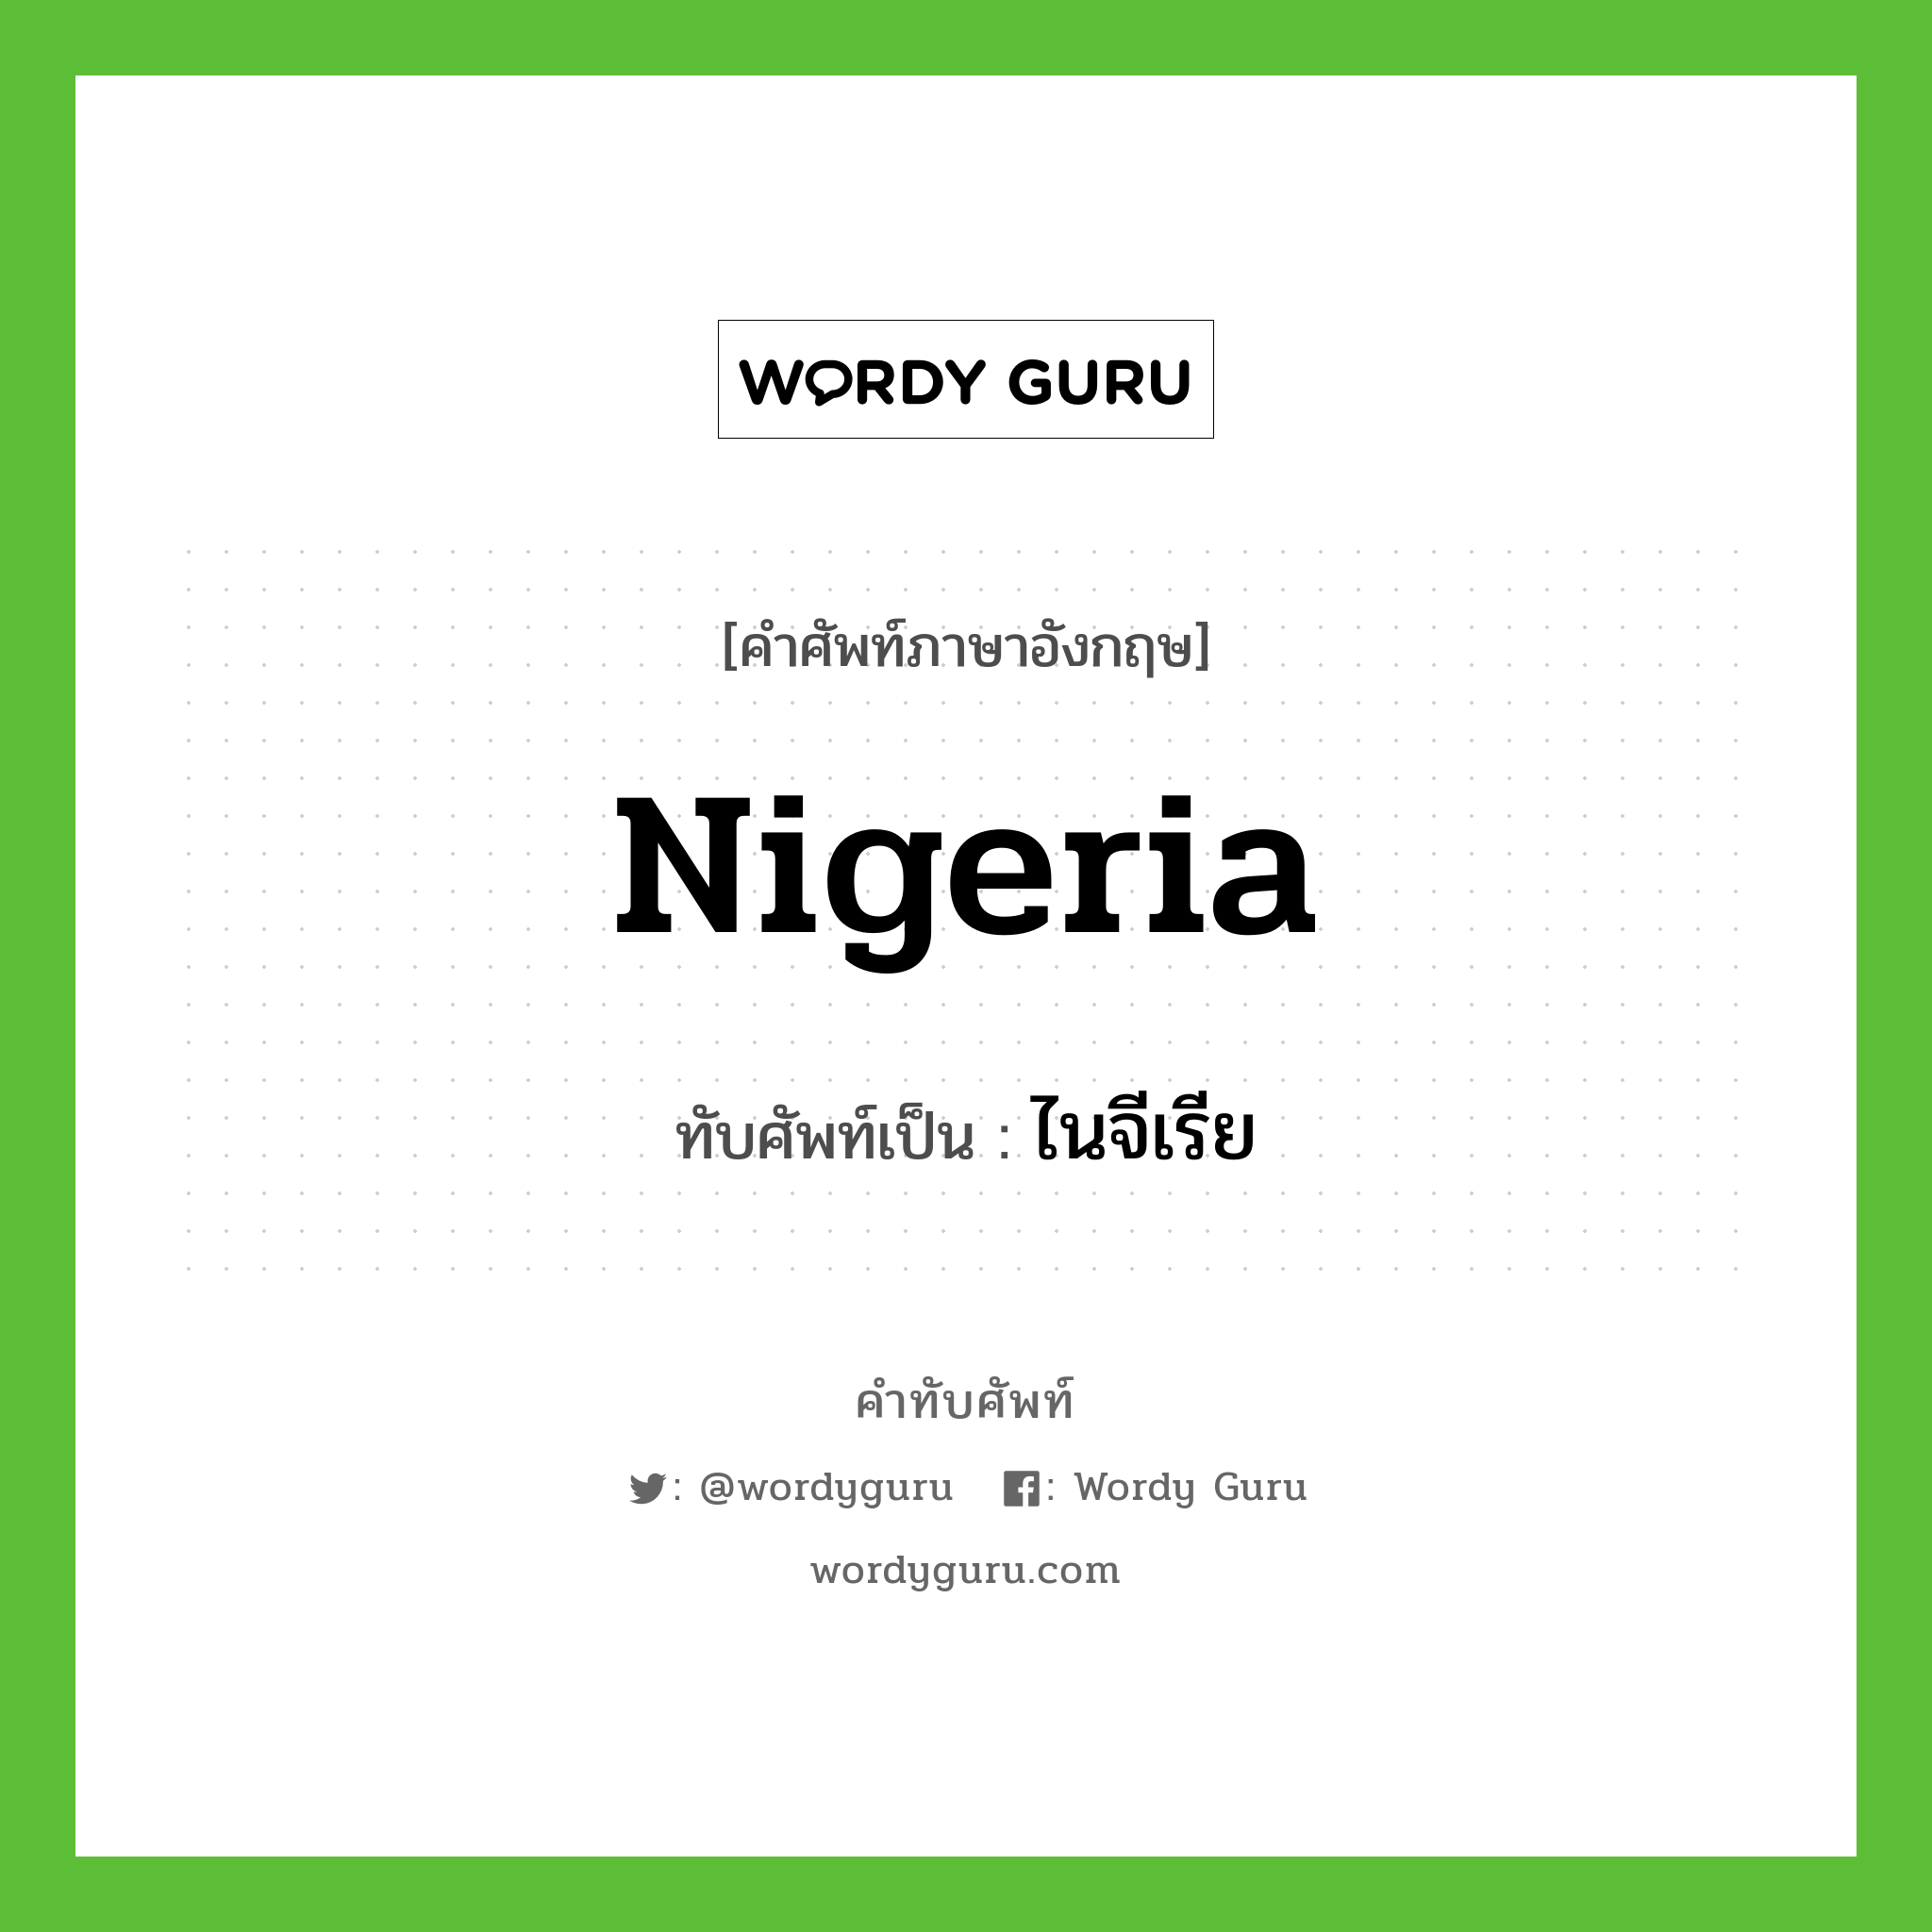 ไนจีเรีย เขียนอย่างไร?, คำศัพท์ภาษาอังกฤษ ไนจีเรีย ทับศัพท์เป็น Nigeria